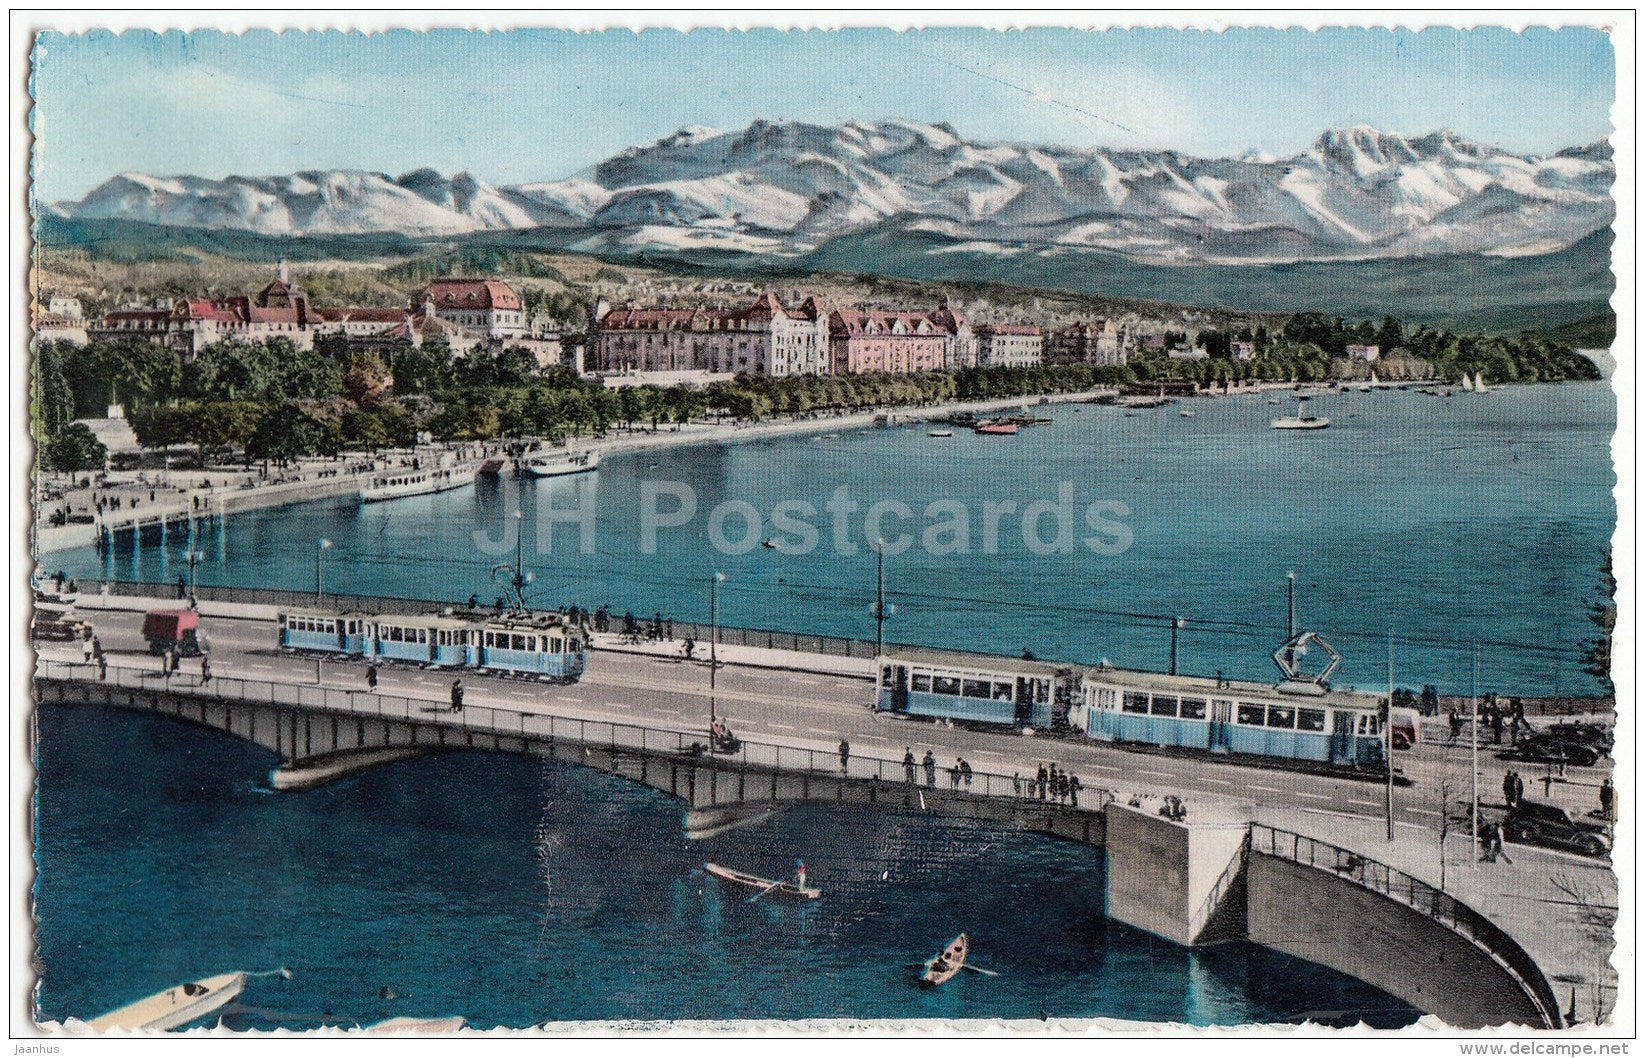 Quaibrücke und Utoquai - tram - Zurich - 17 - Switzerland - unused - JH Postcards